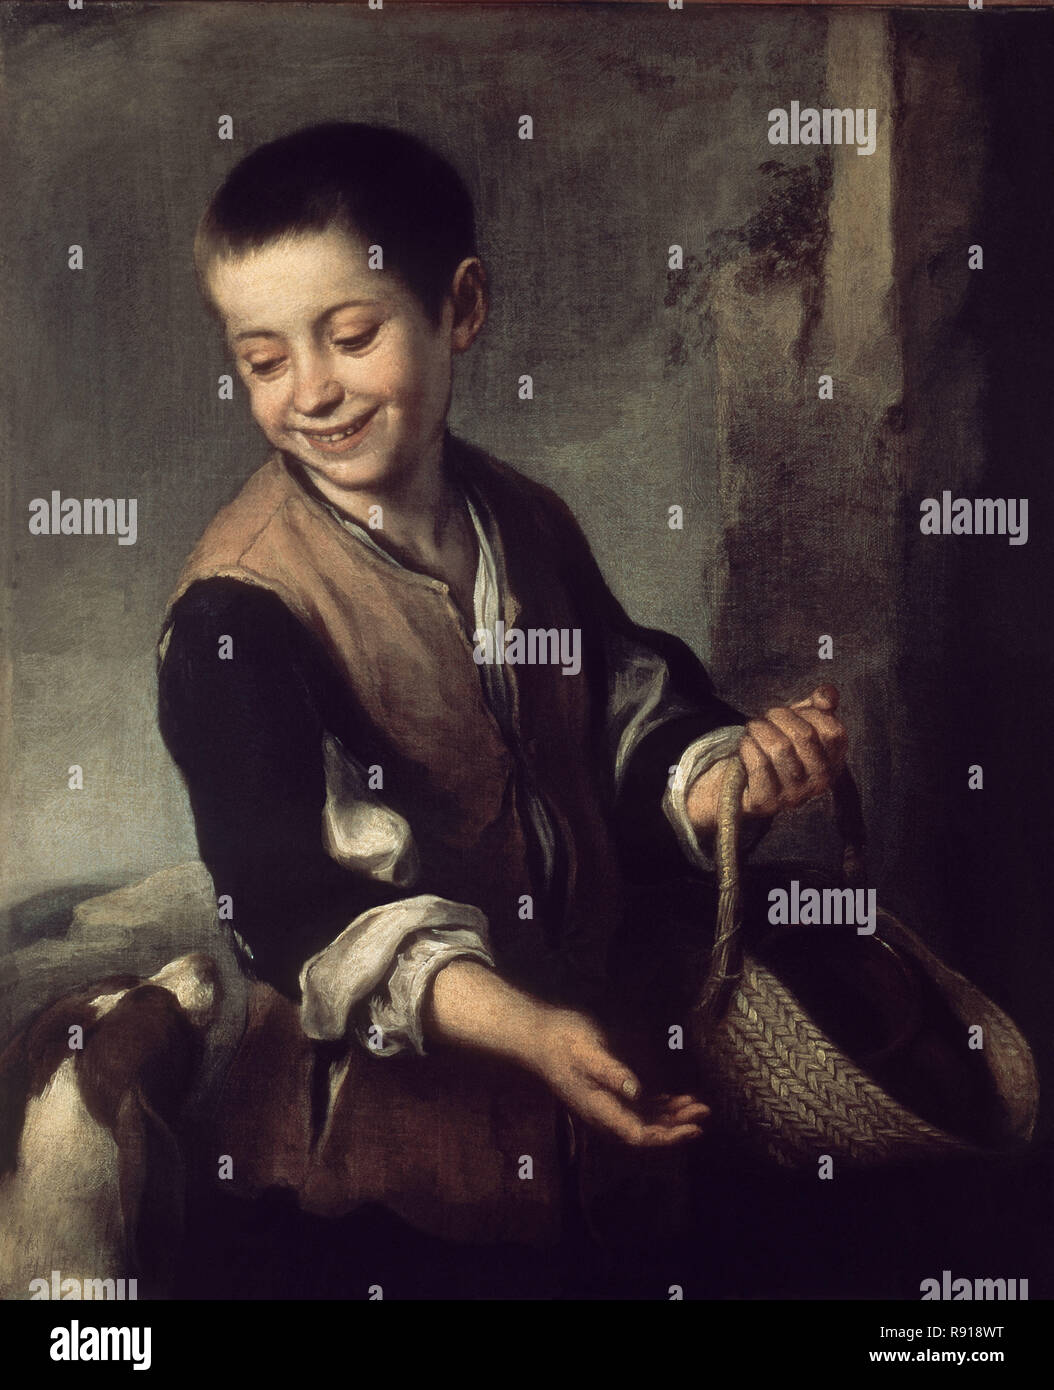 Junge mit Hund - 1655/56 - Öl auf Leinwand - 60 x 74 - Spanischen Barock. Autor: MURILLO, Bartolome Esteban. Lage: MUSEO ERMITAGE - coleccion. ST. PETERSBURG. Russland. Stockfoto